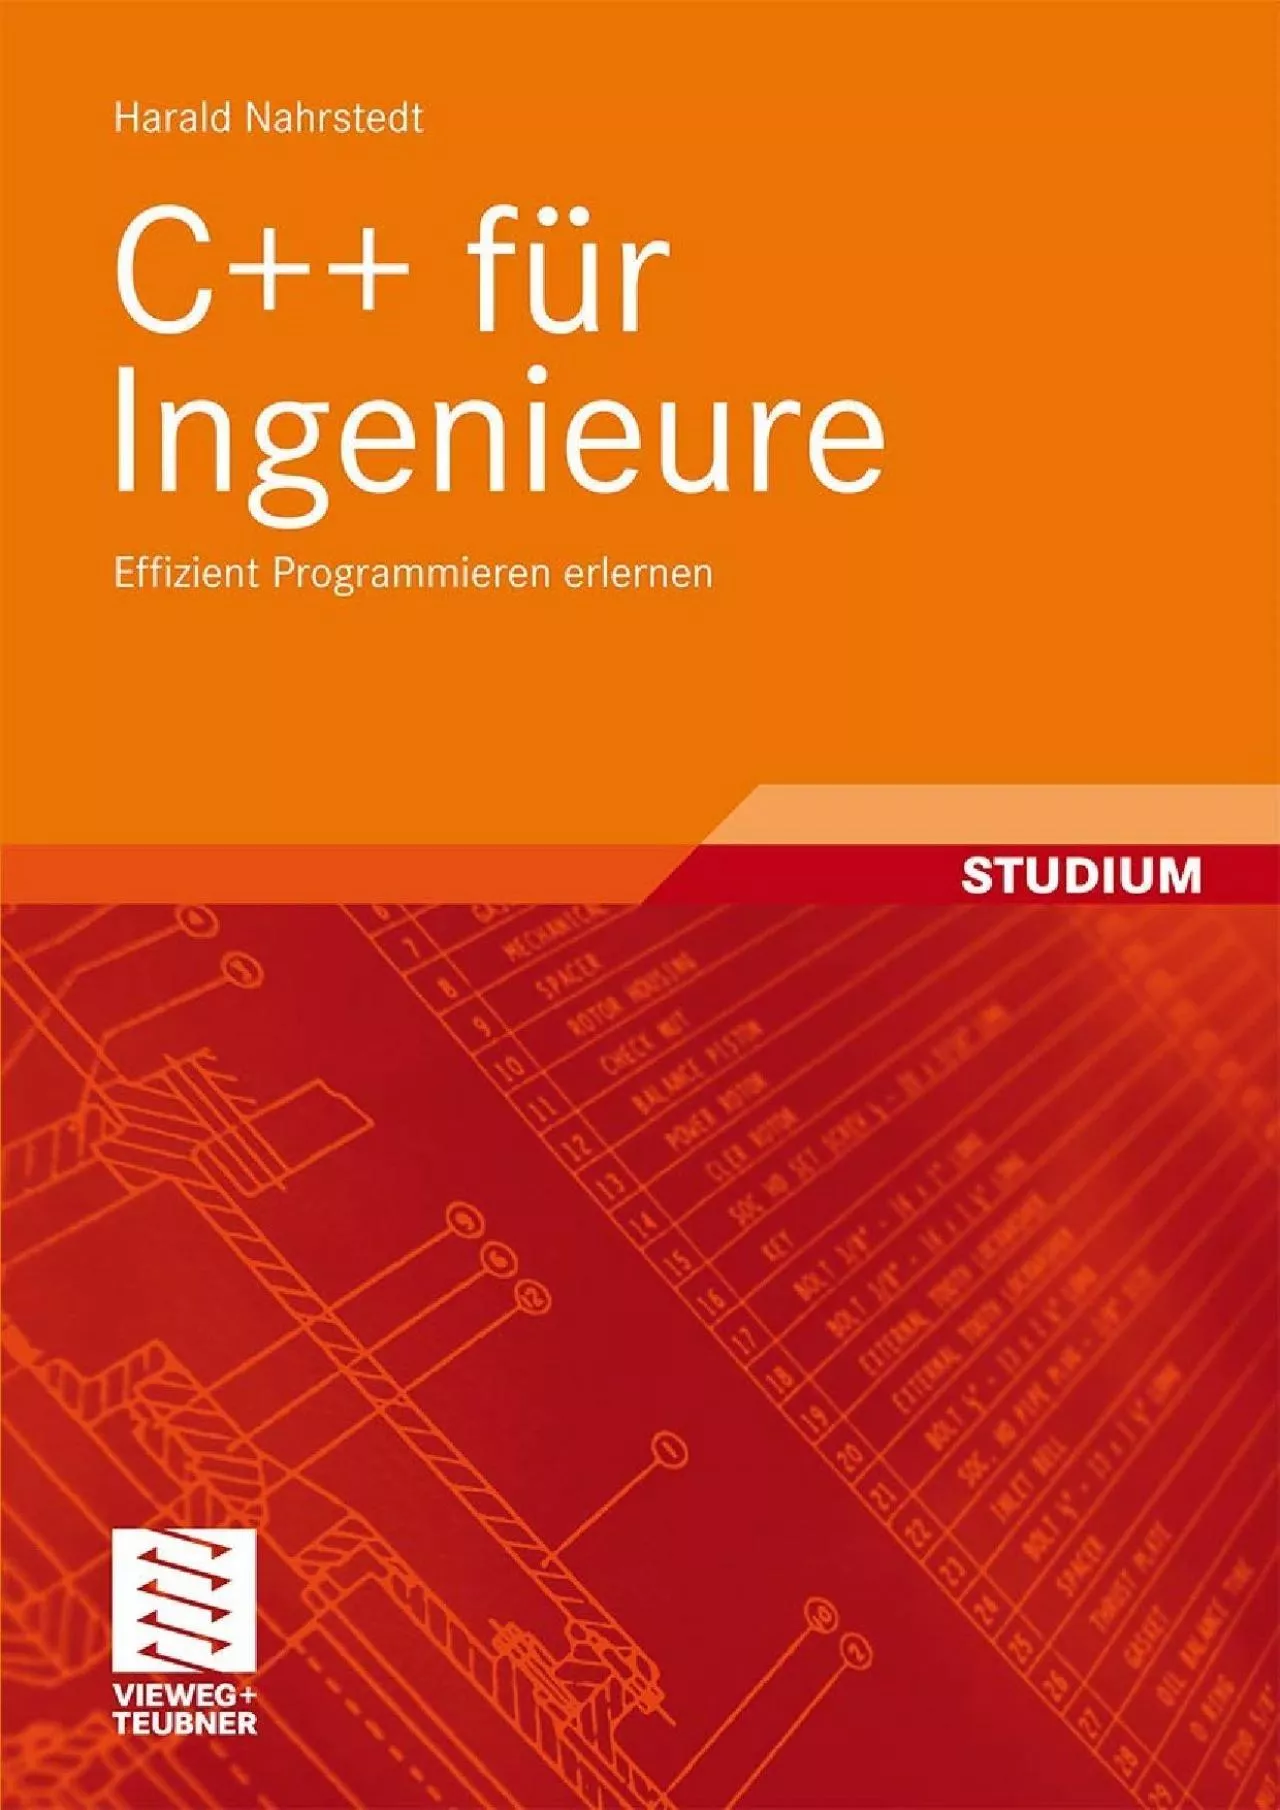 [READ]-C++ für Ingenieure: Effizient Programmieren erlernen (German Edition)